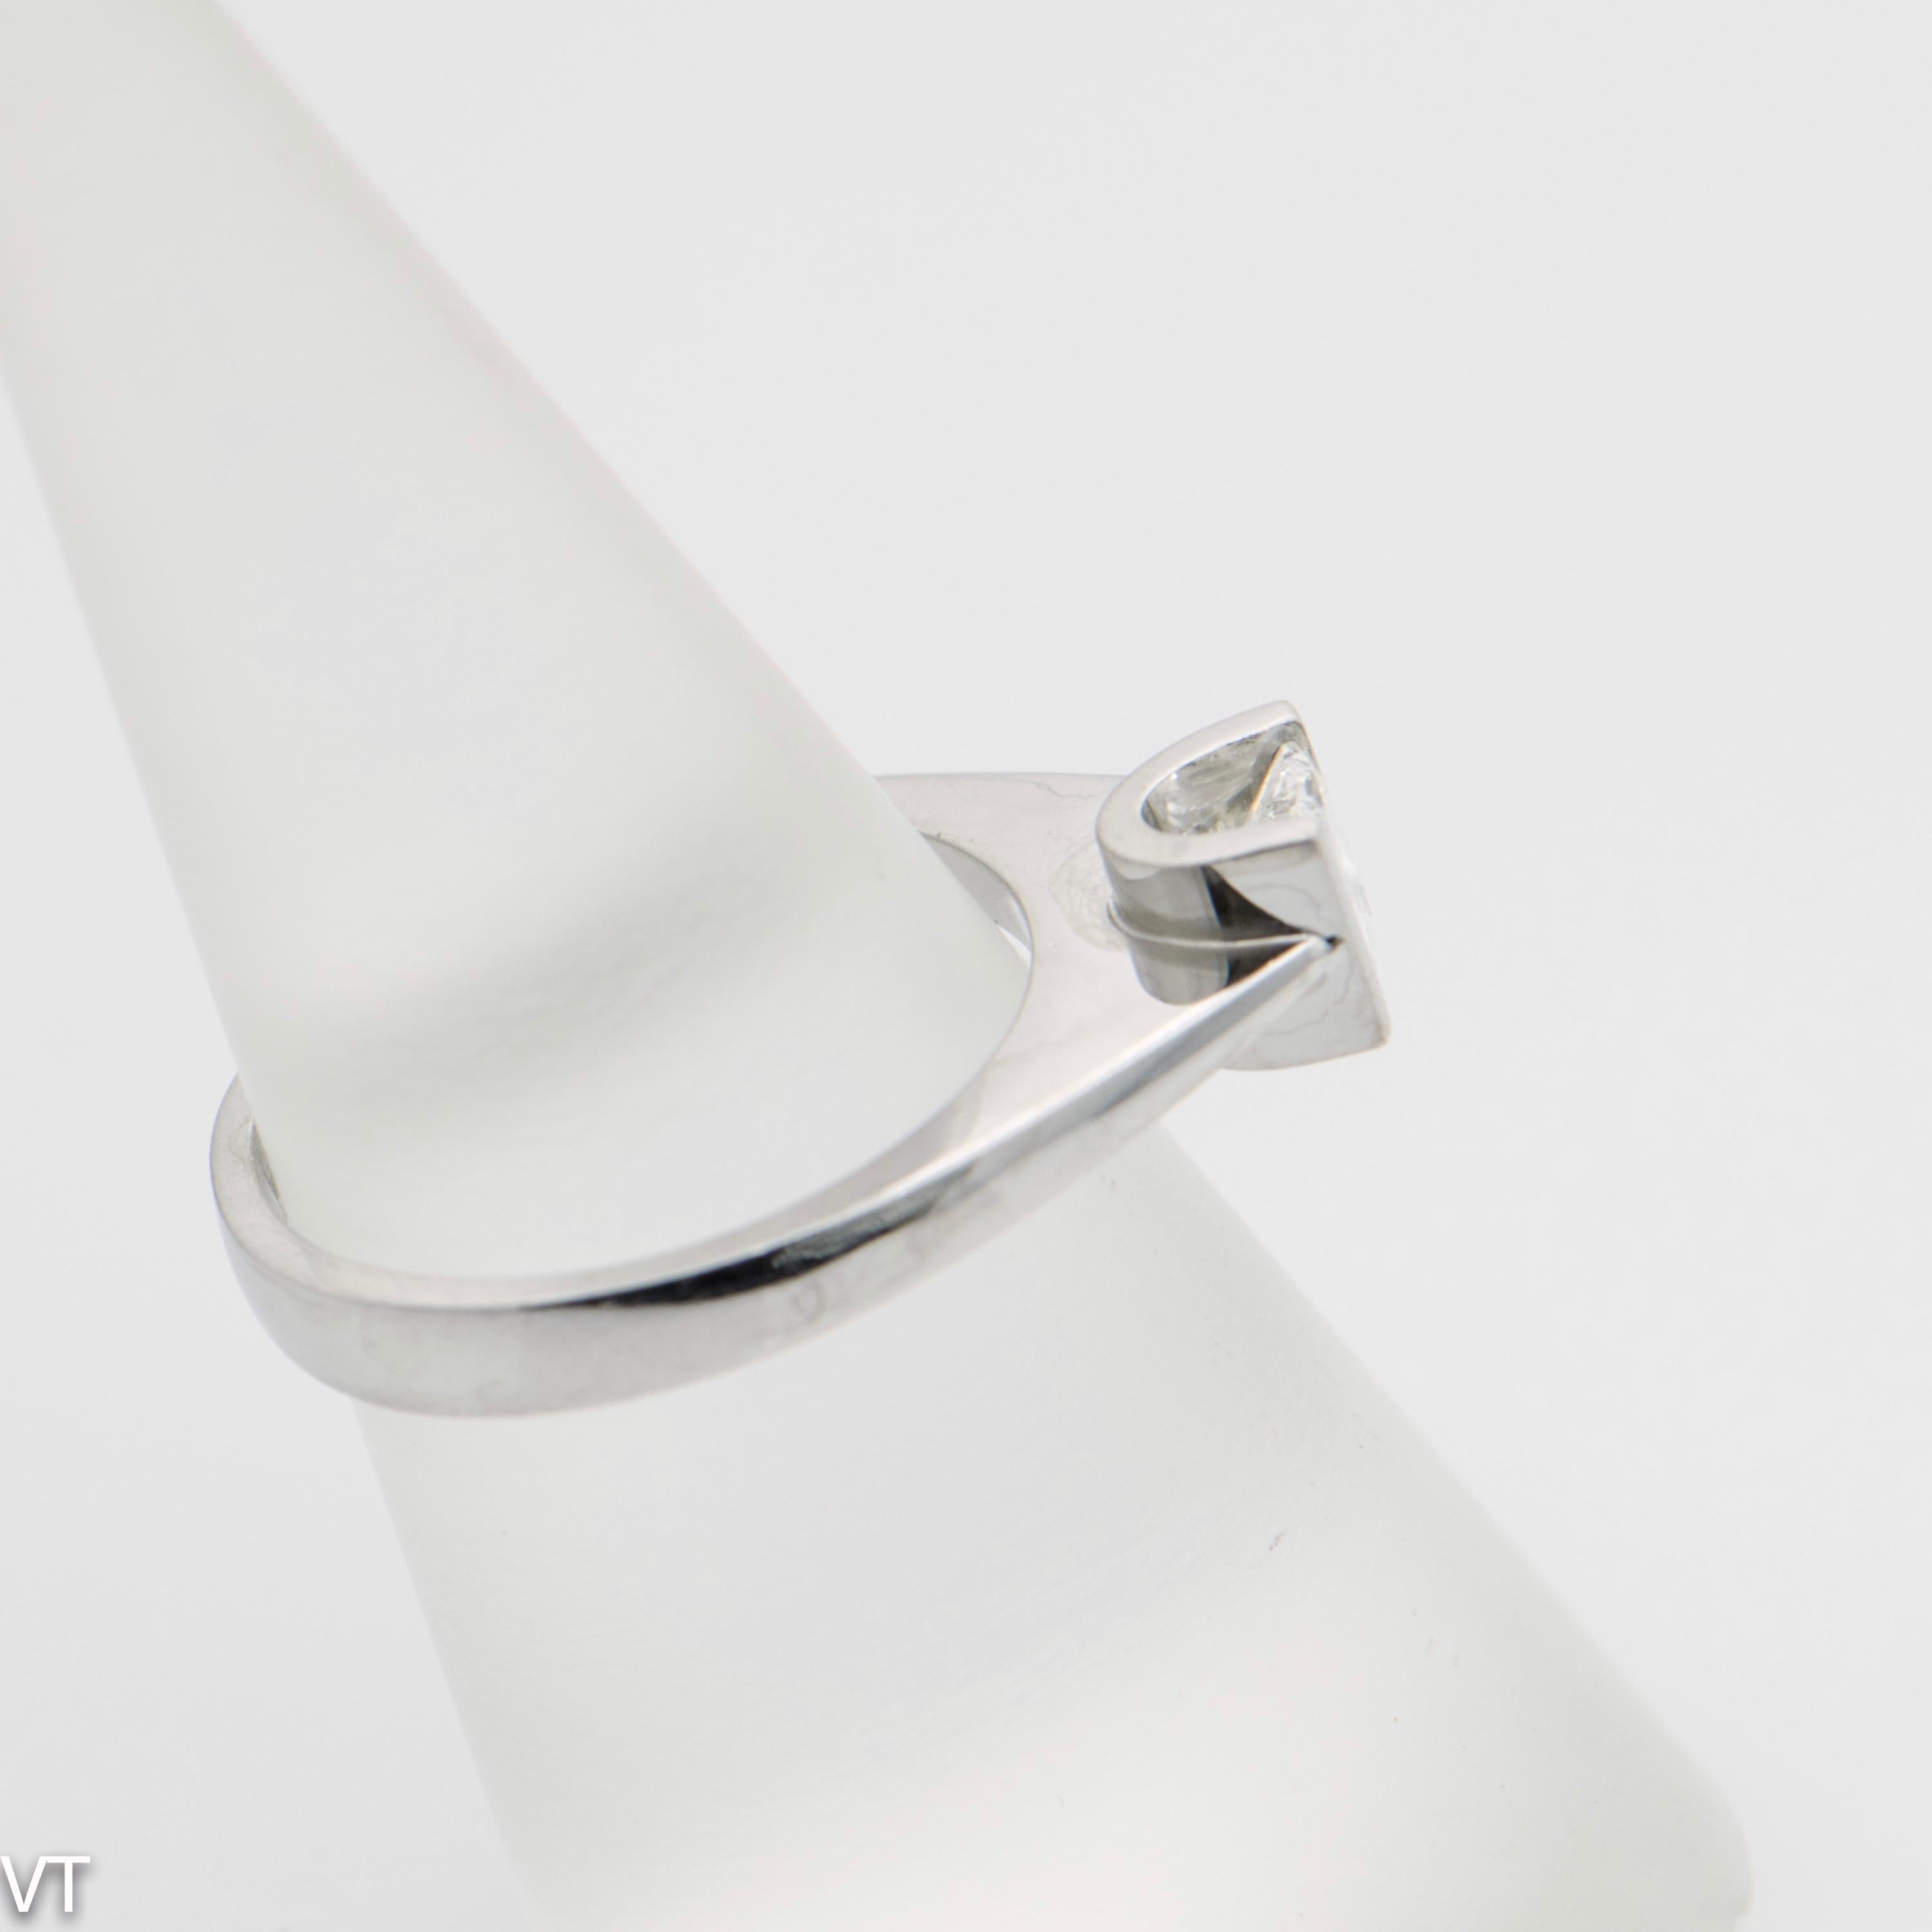 Weiß 18 Karat  Weißgold-Verlobung  u-förmiger Ring mit einem natürlichen Diamanten. Gewicht 0,51 Karat, Princess-Schliff, Farbe G, Reinheit VVS, Größe N (US-Größe 6 1/2). Gesamtgewicht des Rings 4,9 gr. 